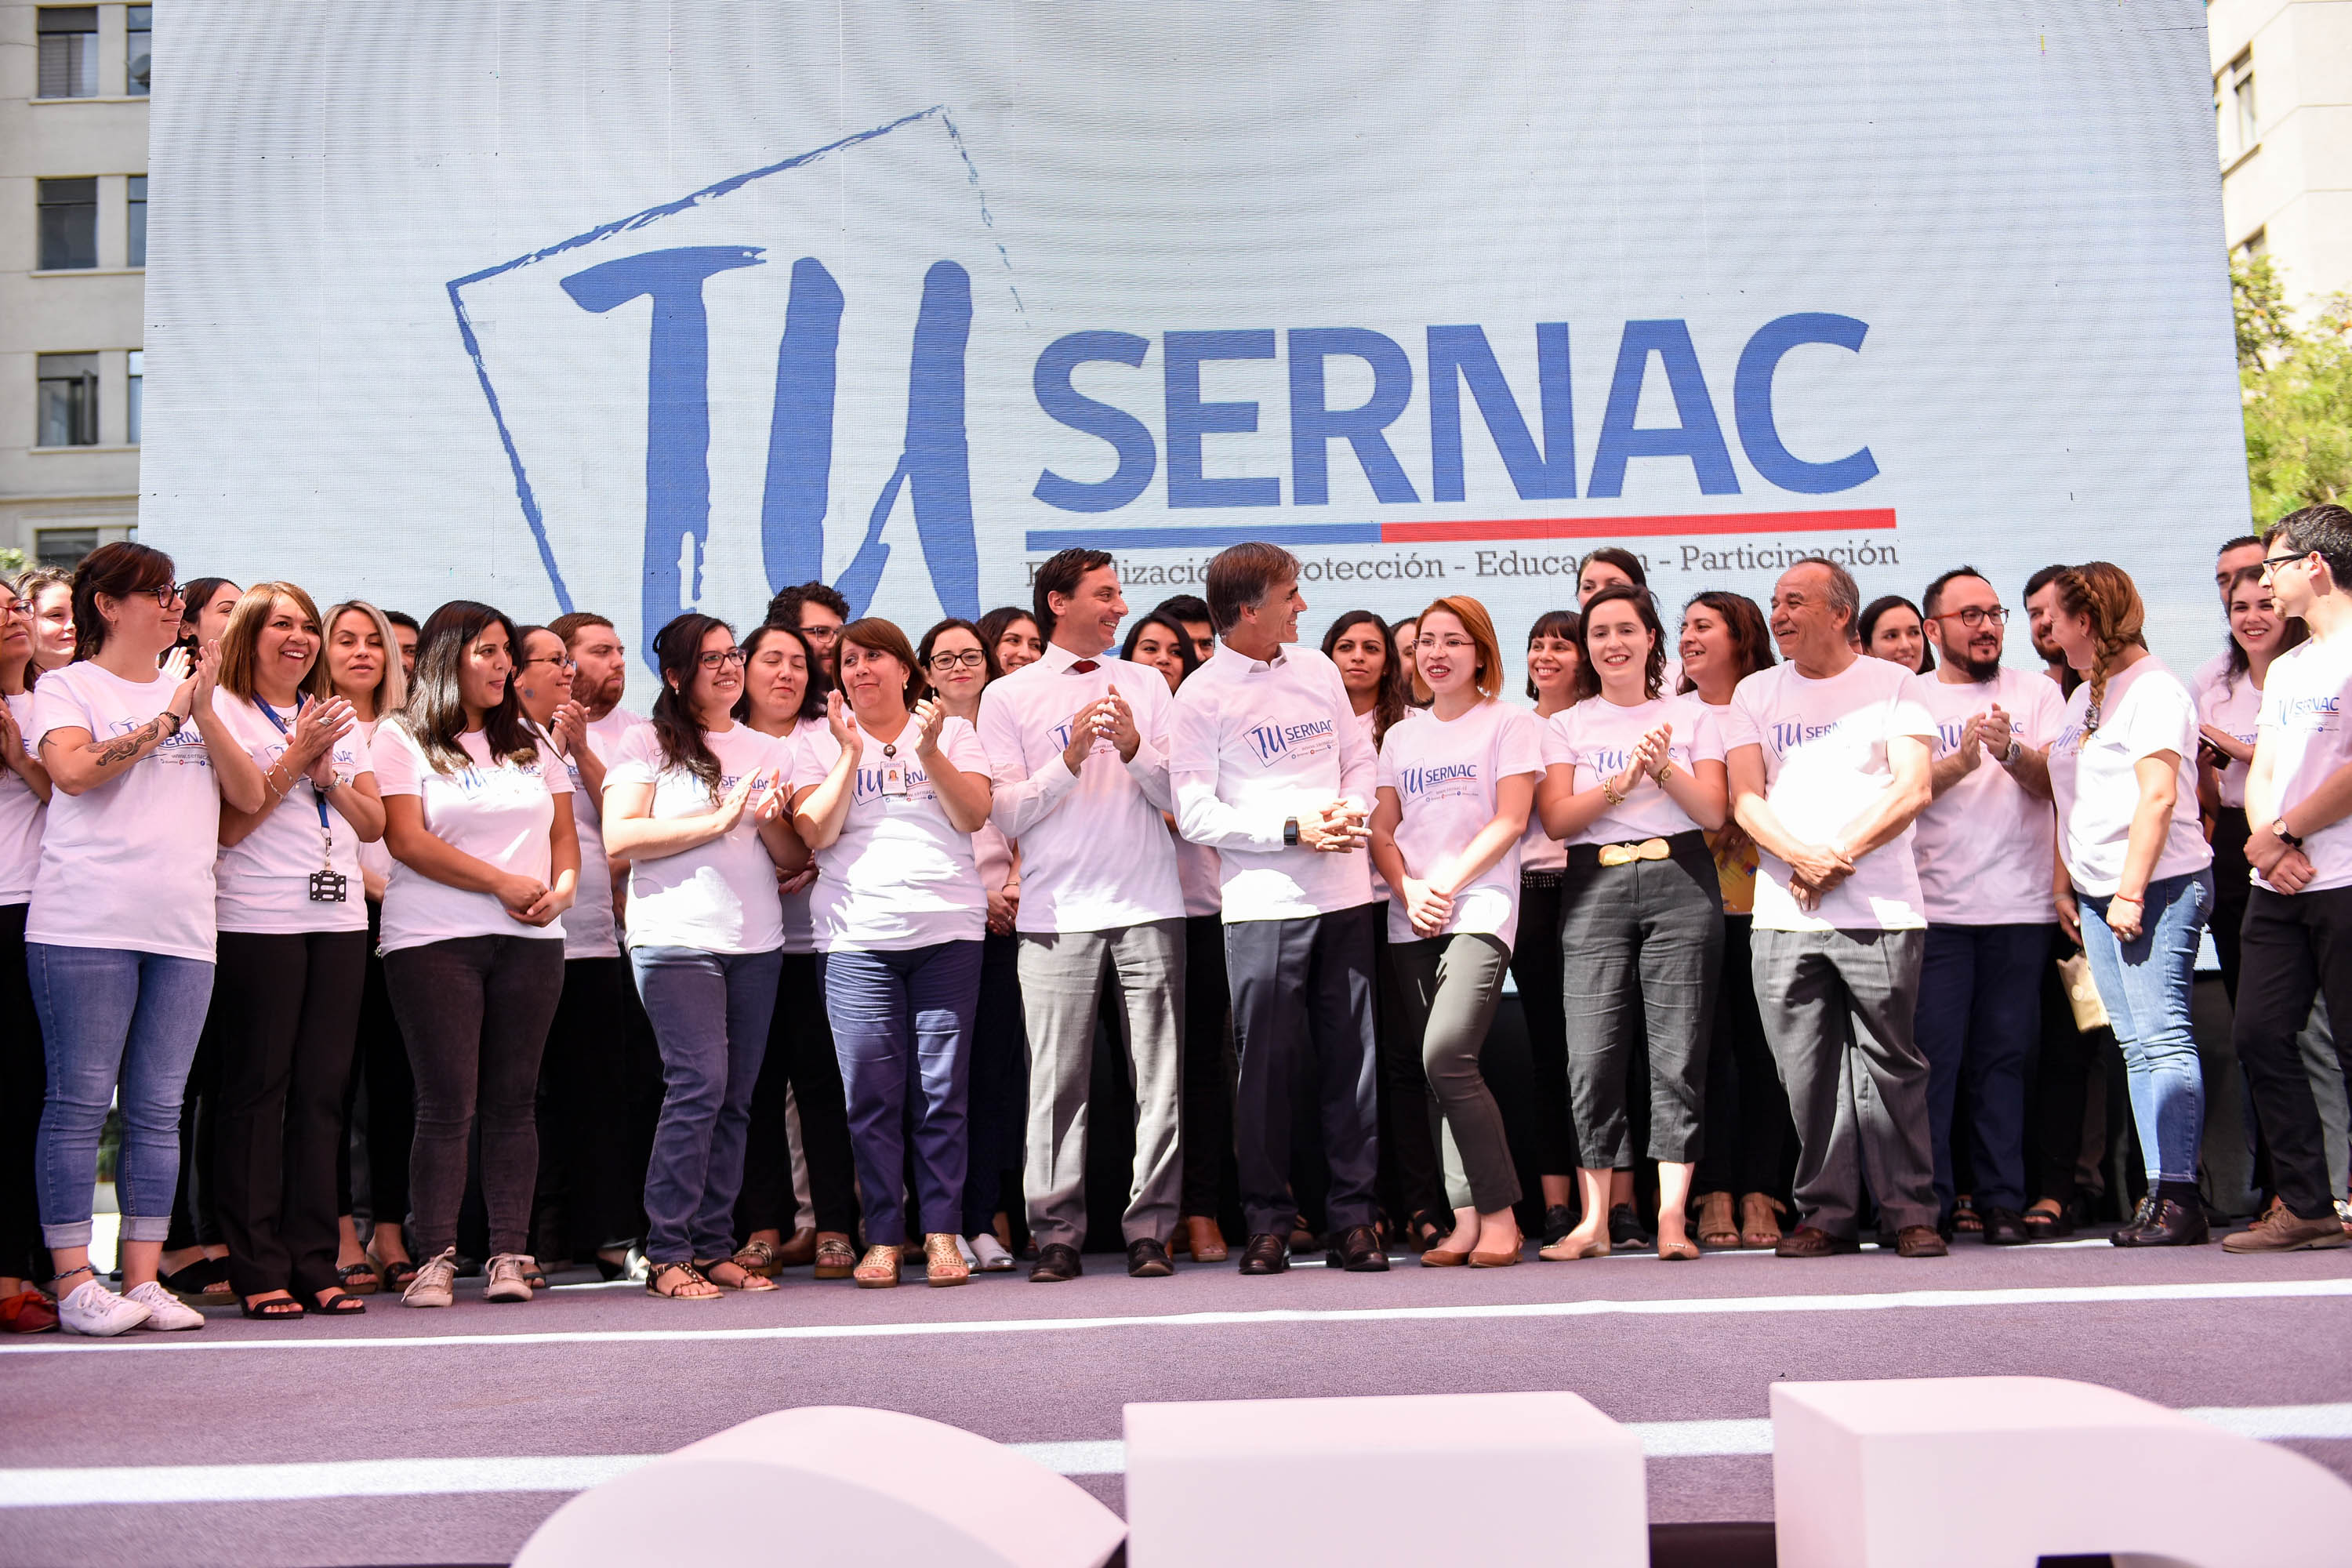 Director del SERNAC, Lucas Del Villar, junto al Ministro de Economía, José Ramón Valente, dan el puntapié inicial al Nuevo SERNAC.